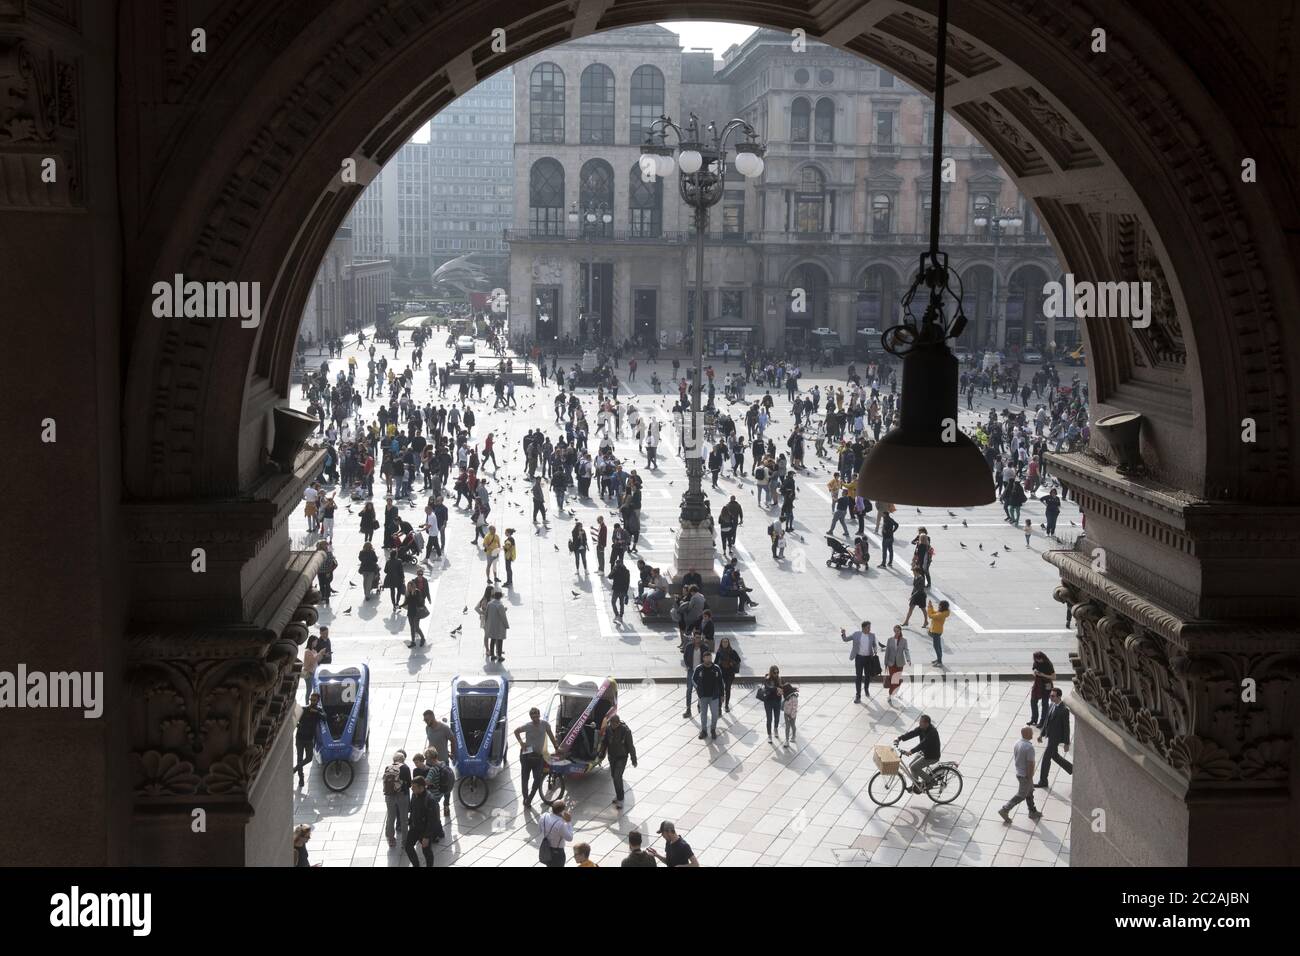 Vista dall'alto dei pedoni che camminano sulla piazza del Duomo, vista attraverso la galleria, nel centro di Milano. Foto Stock